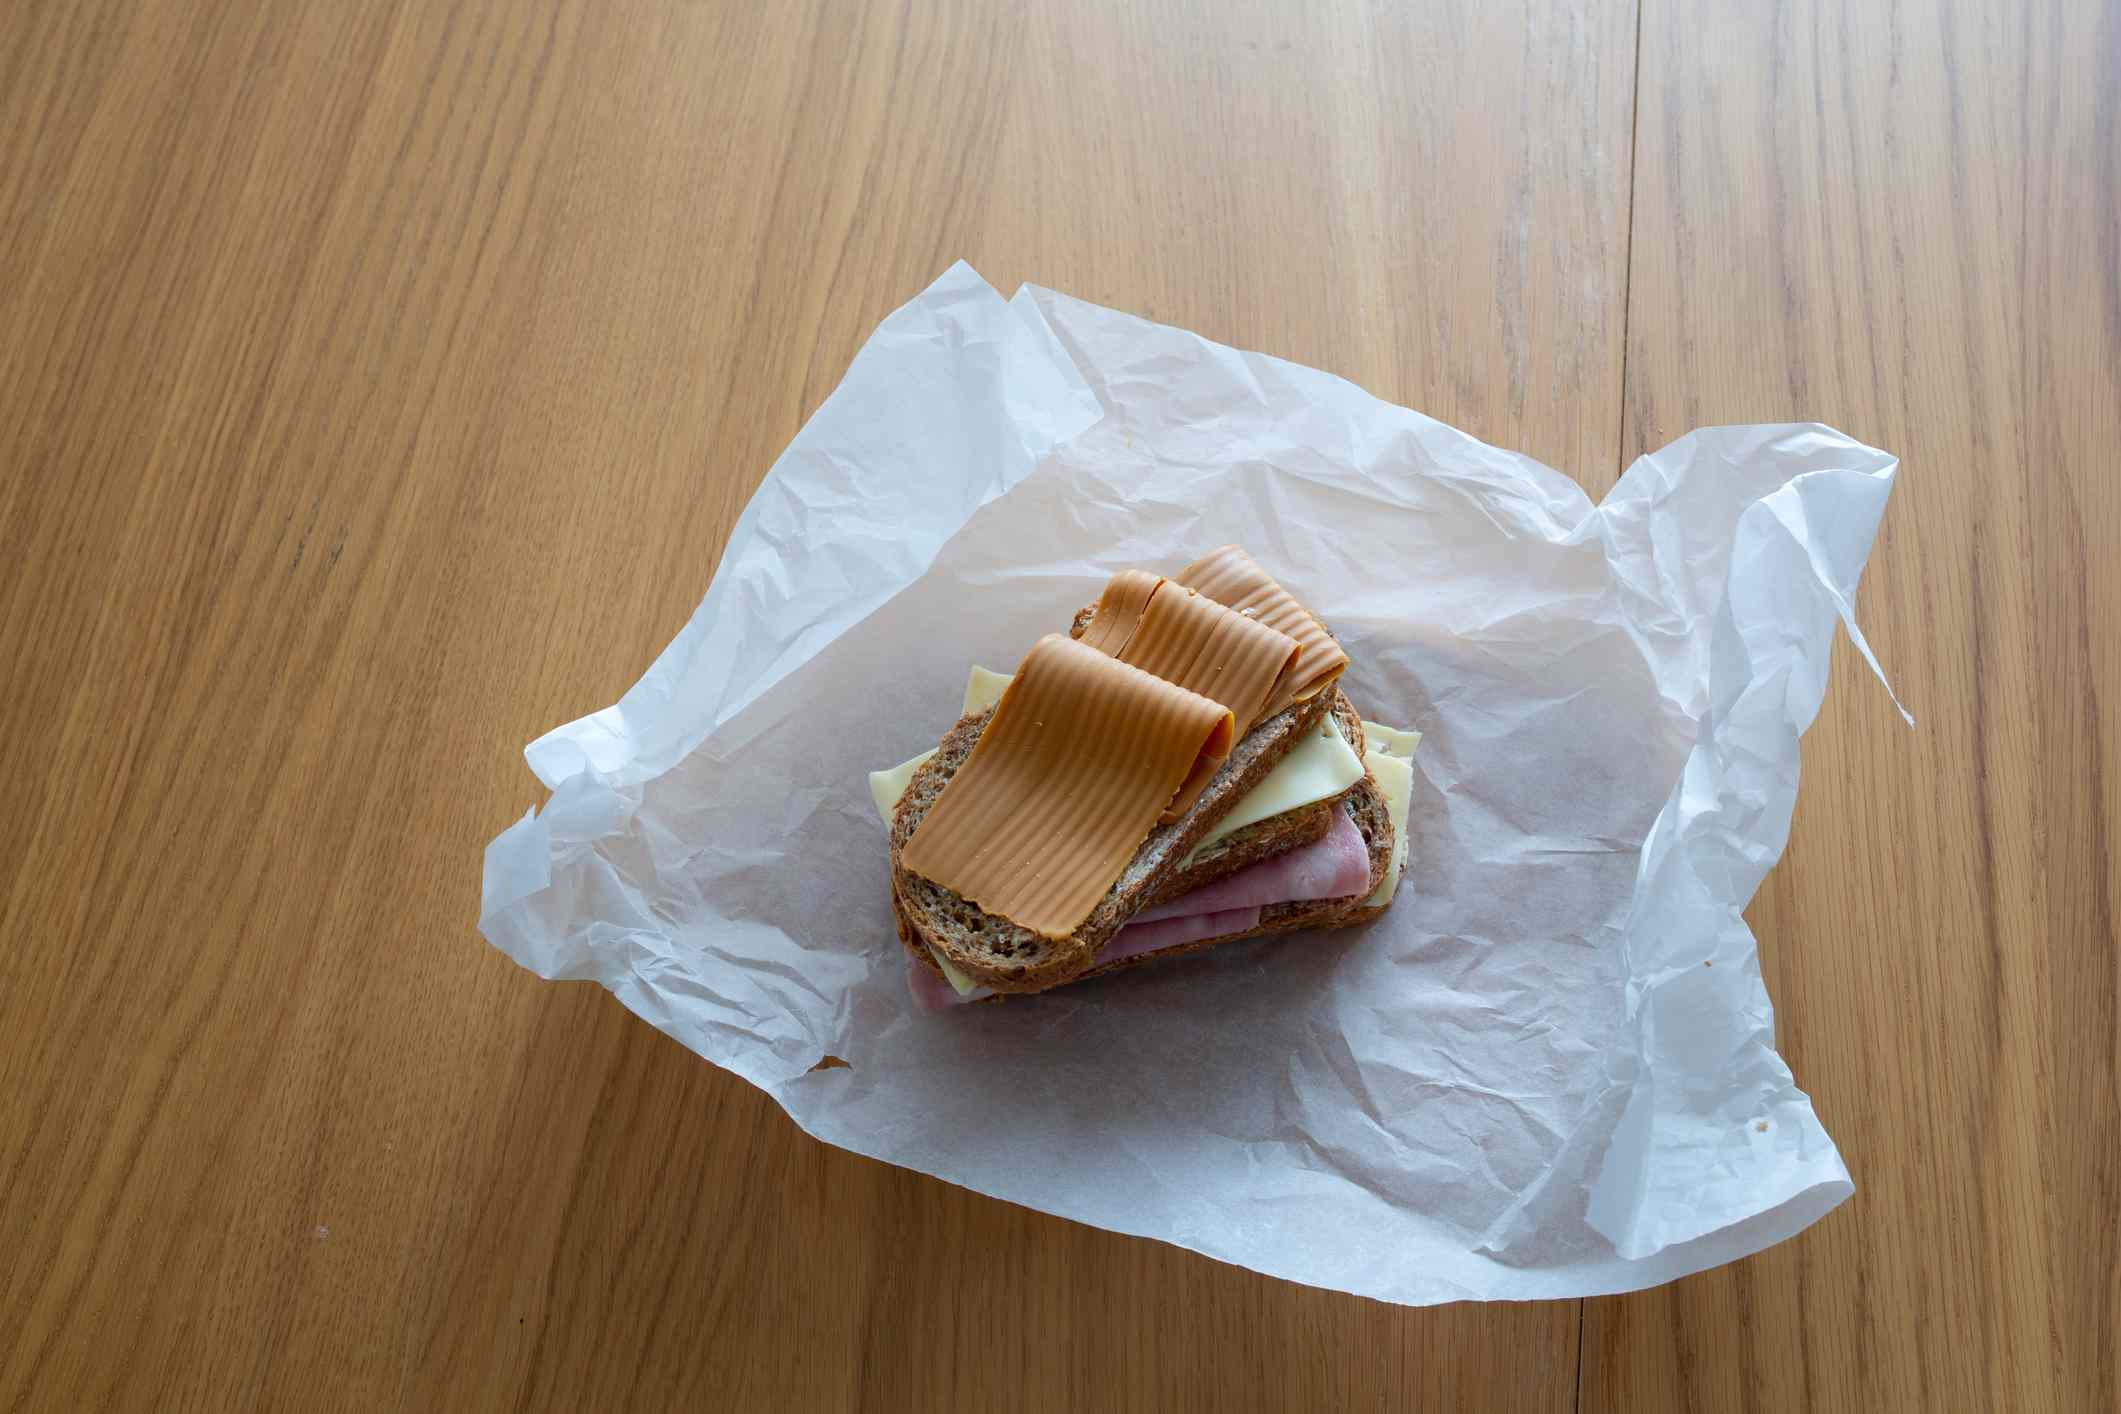 用食品包装纸包装的三明治。“width=